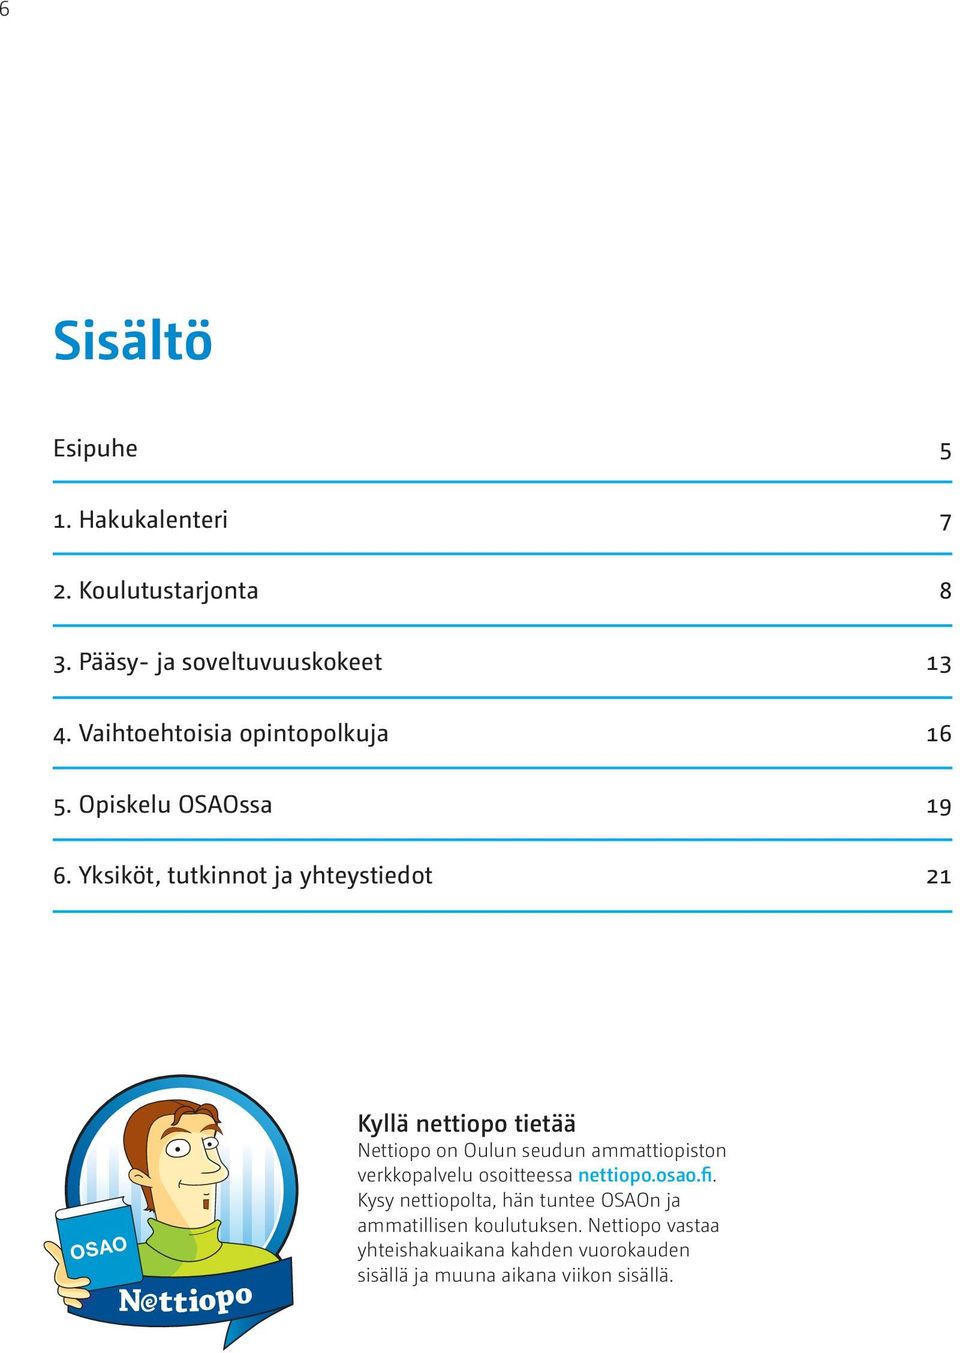 Yksiköt, tutkinnot ja yhteystiedot 21 OSAO Kyllä nettiopo tietää Nettiopo on Oulun seudun ammattiopiston